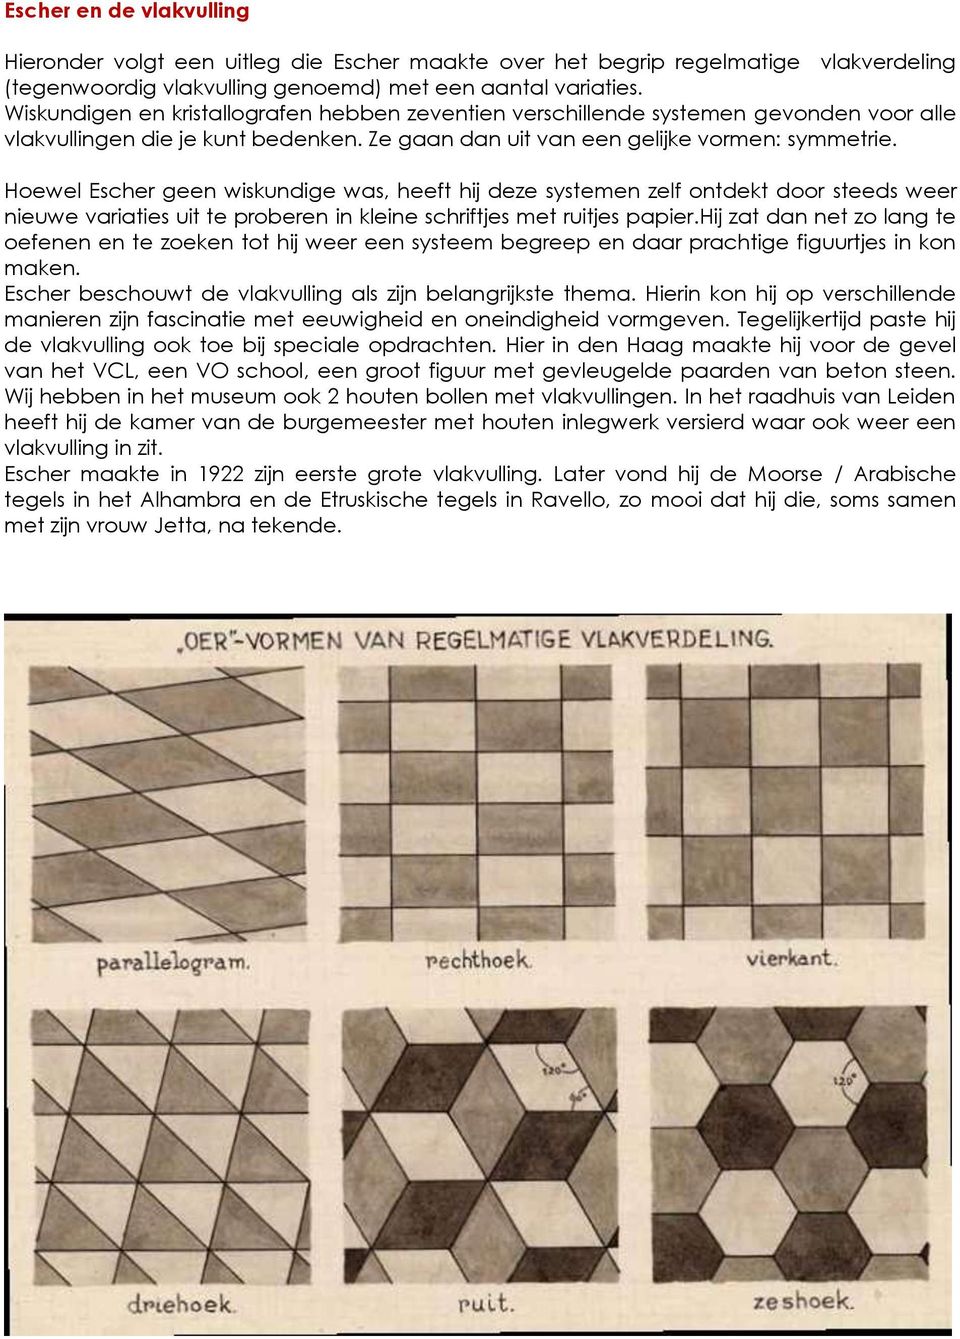 Hoewel Escher geen wiskundige was, heeft hij deze systemen zelf ontdekt door steeds weer nieuwe variaties uit te proberen in kleine schriftjes met ruitjes papier.